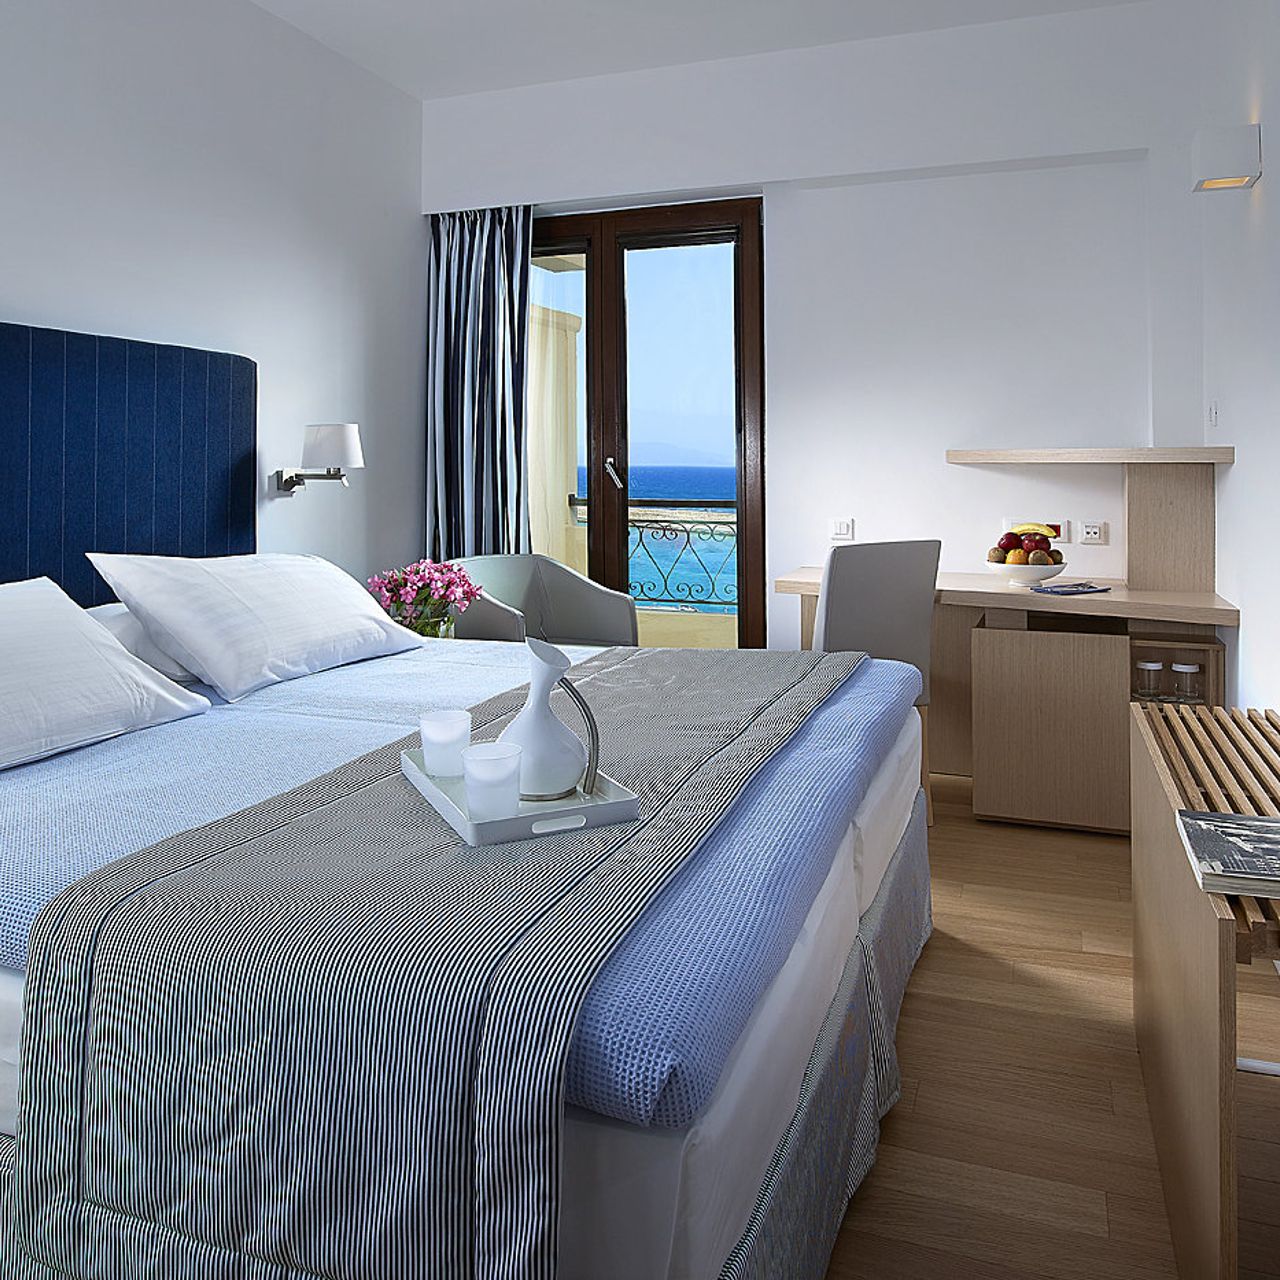 Hotel Porto Veneziano Chania, Crete - Great prices at HOTEL INFO